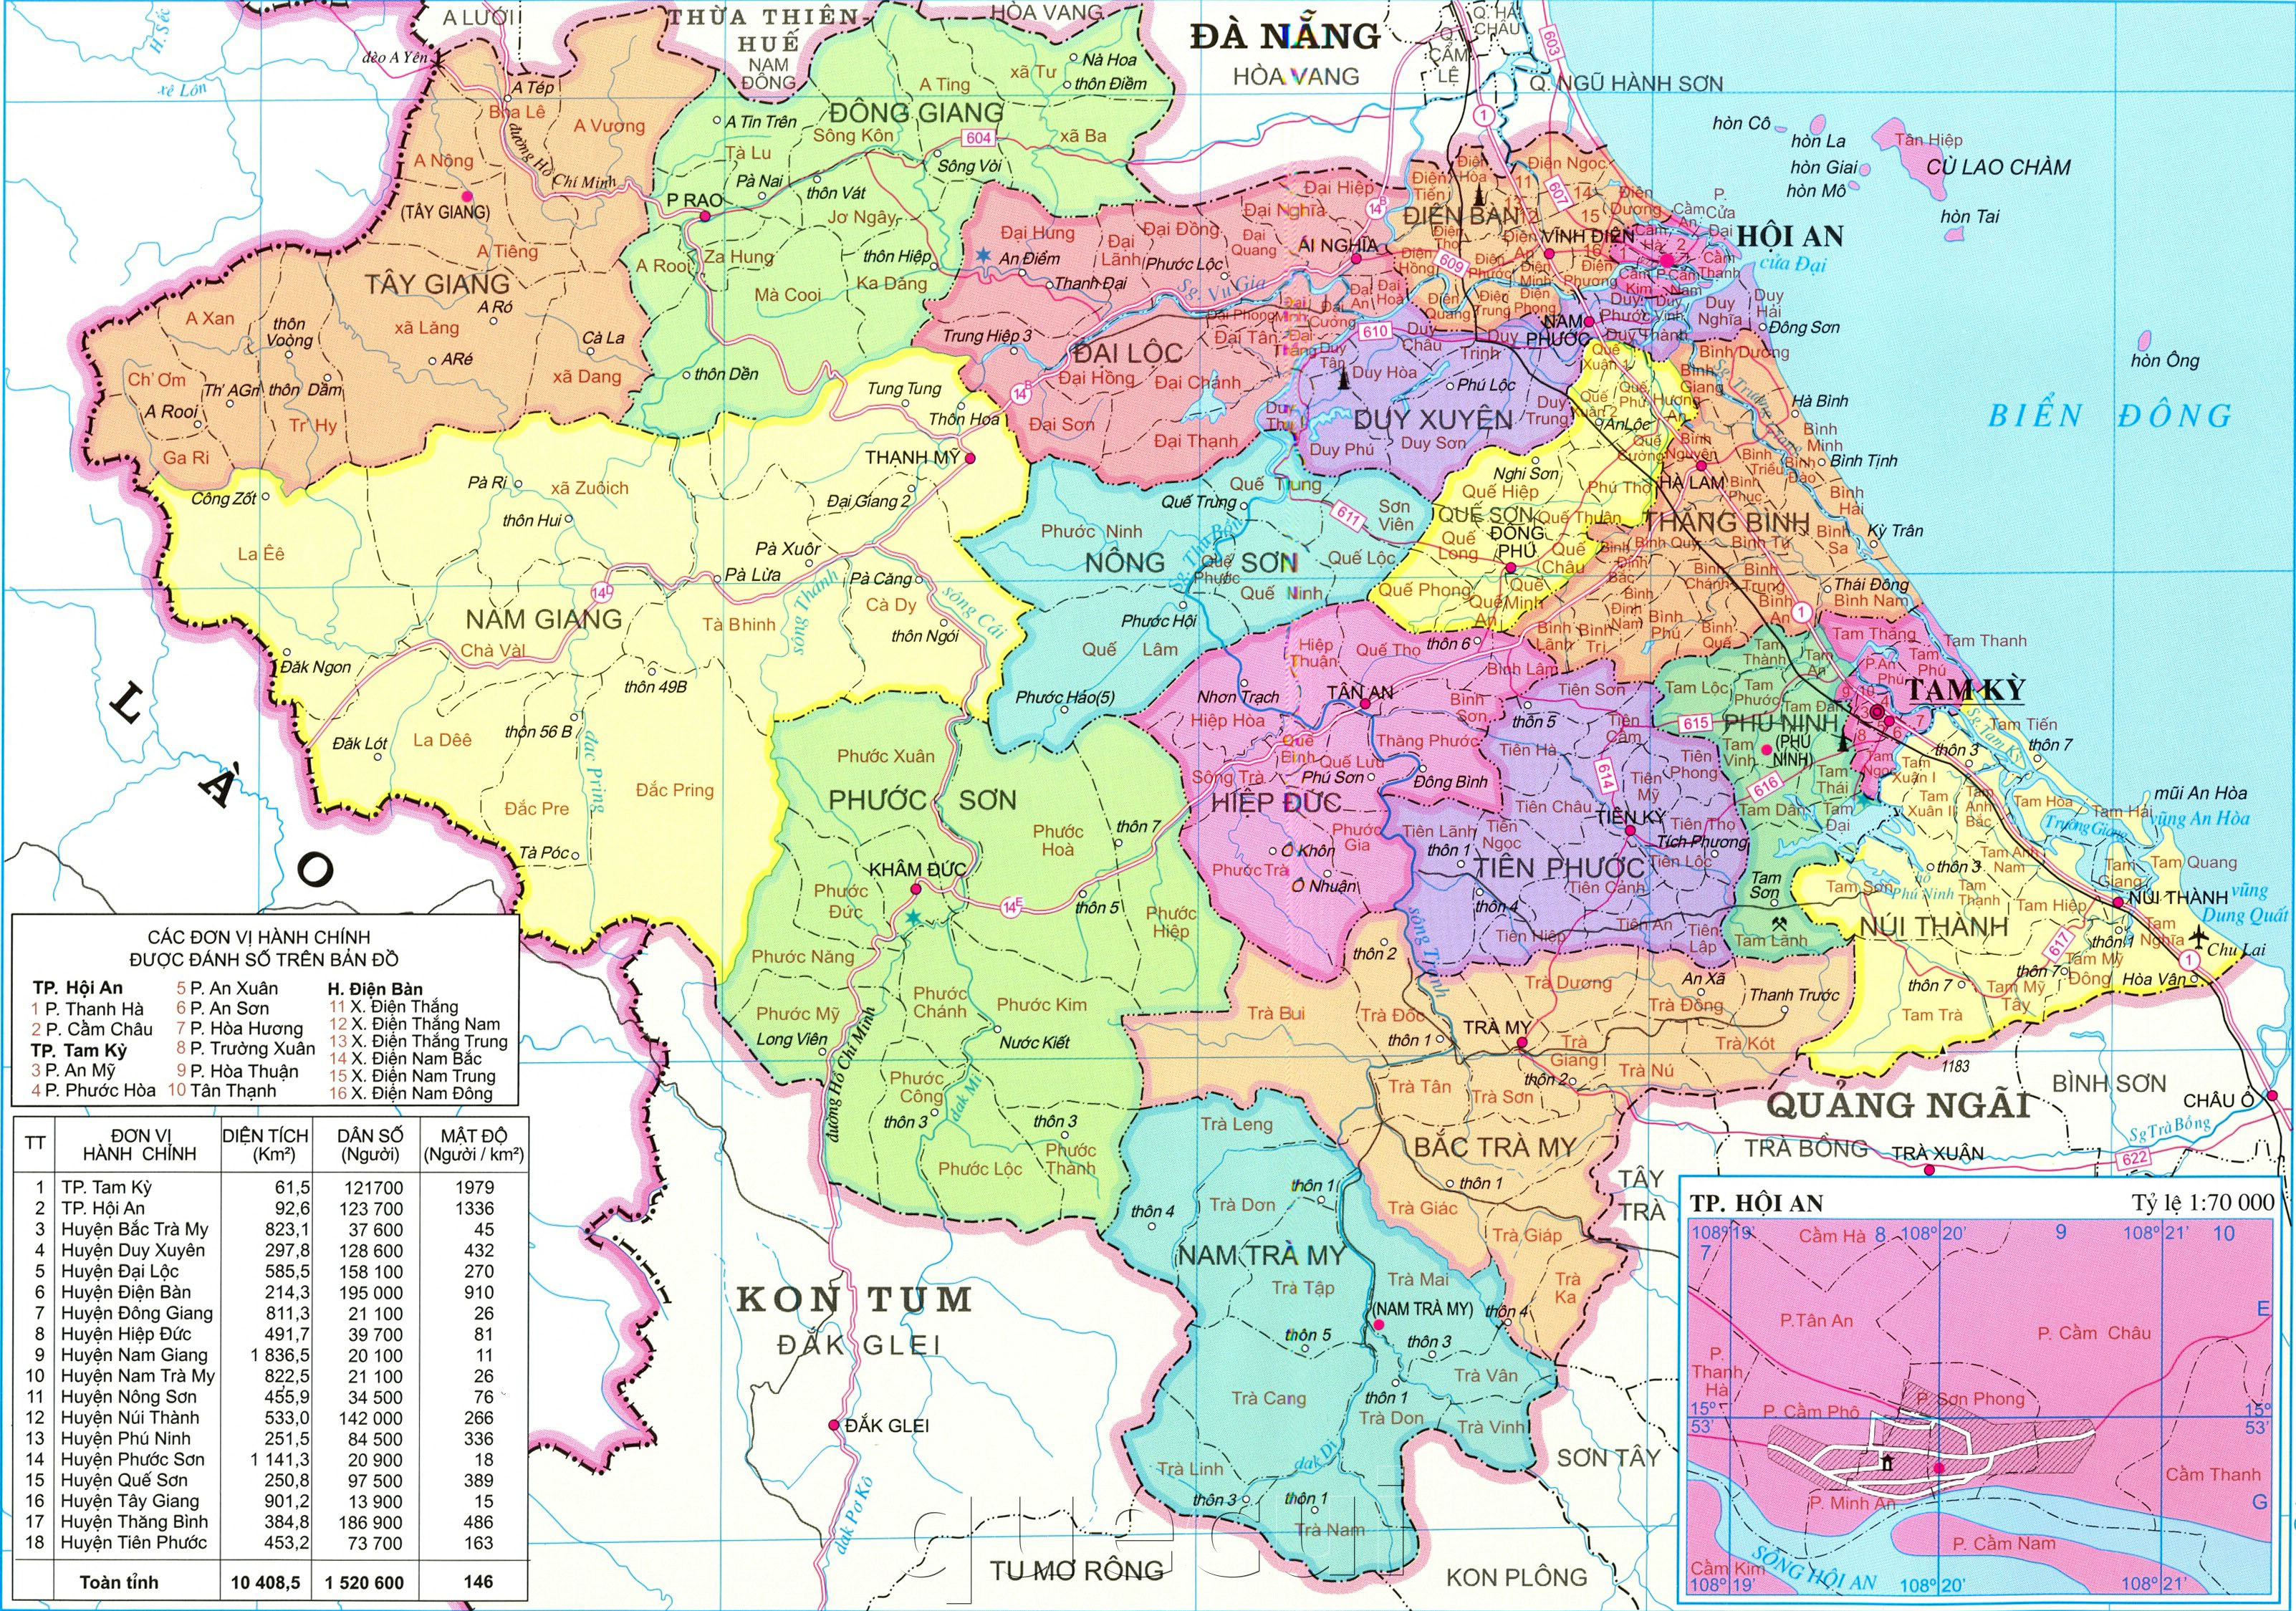 Bản đồ hành chính tỉnh Quảng Nam 2024: Bản đồ hành chính mới nhất của Quảng Nam năm 2024 giúp cho việc đi lại và khám phá tỉnh này trở nên dễ dàng hơn bao giờ hết. Với thông tin chi tiết về các địa điểm du lịch, công trình công cộng và các khu vực đang phát triển, bản đồ này chắc chắn sẽ khiến cho bạn cảm thấy thích thú khi khám phá Quảng Nam.